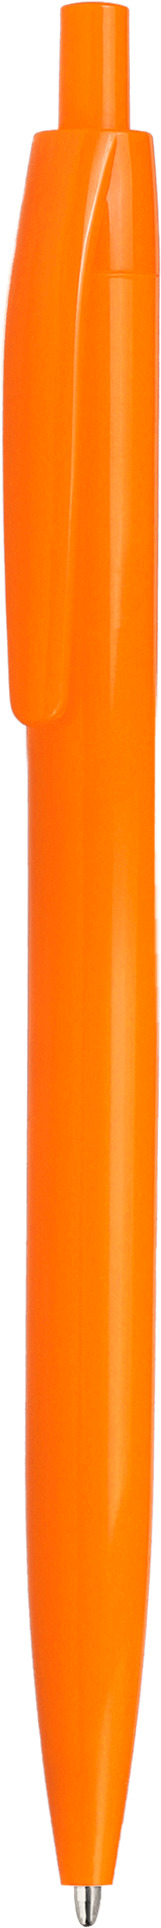 Ручка DAROM, однотонная, оранжевая